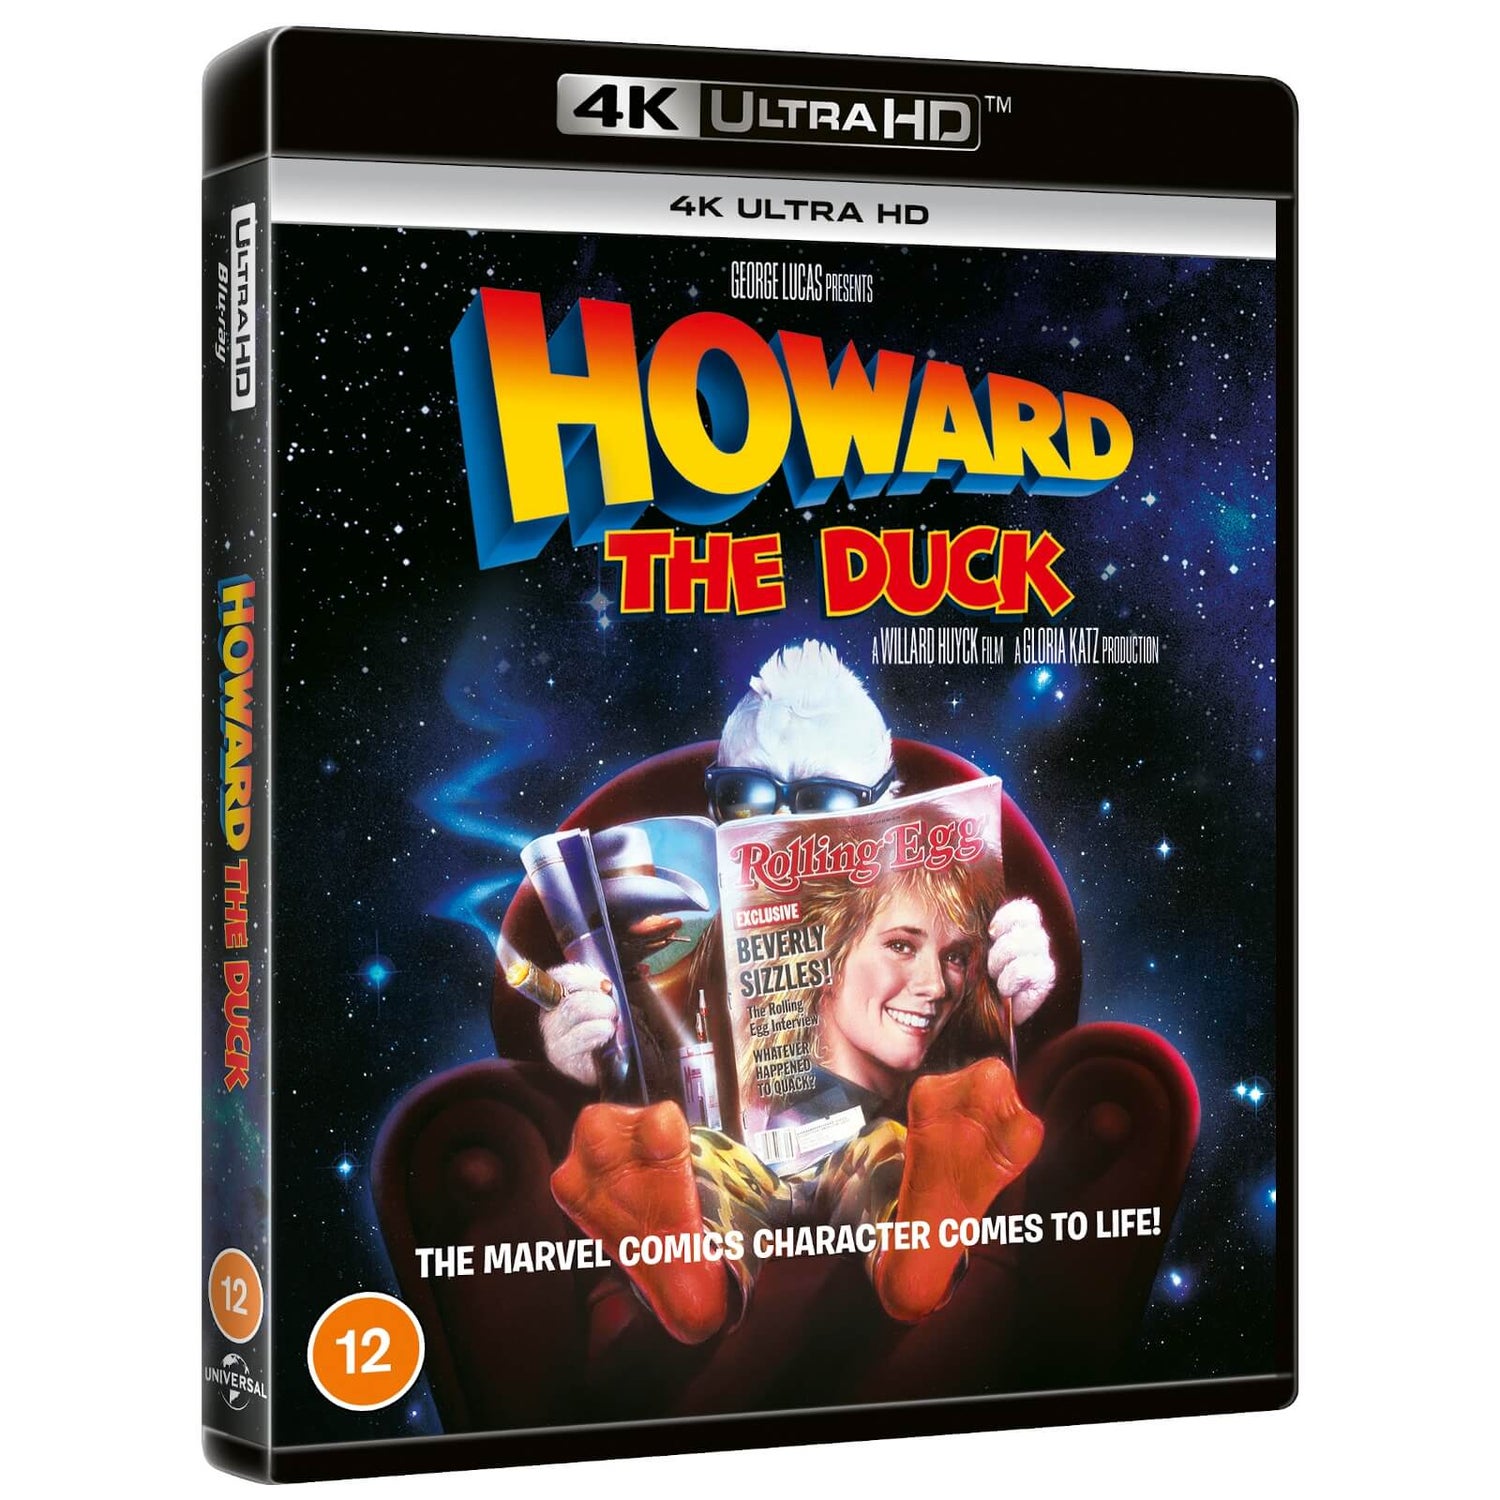 HOWARD THE DUCK (1986) - 4K Ultra HD